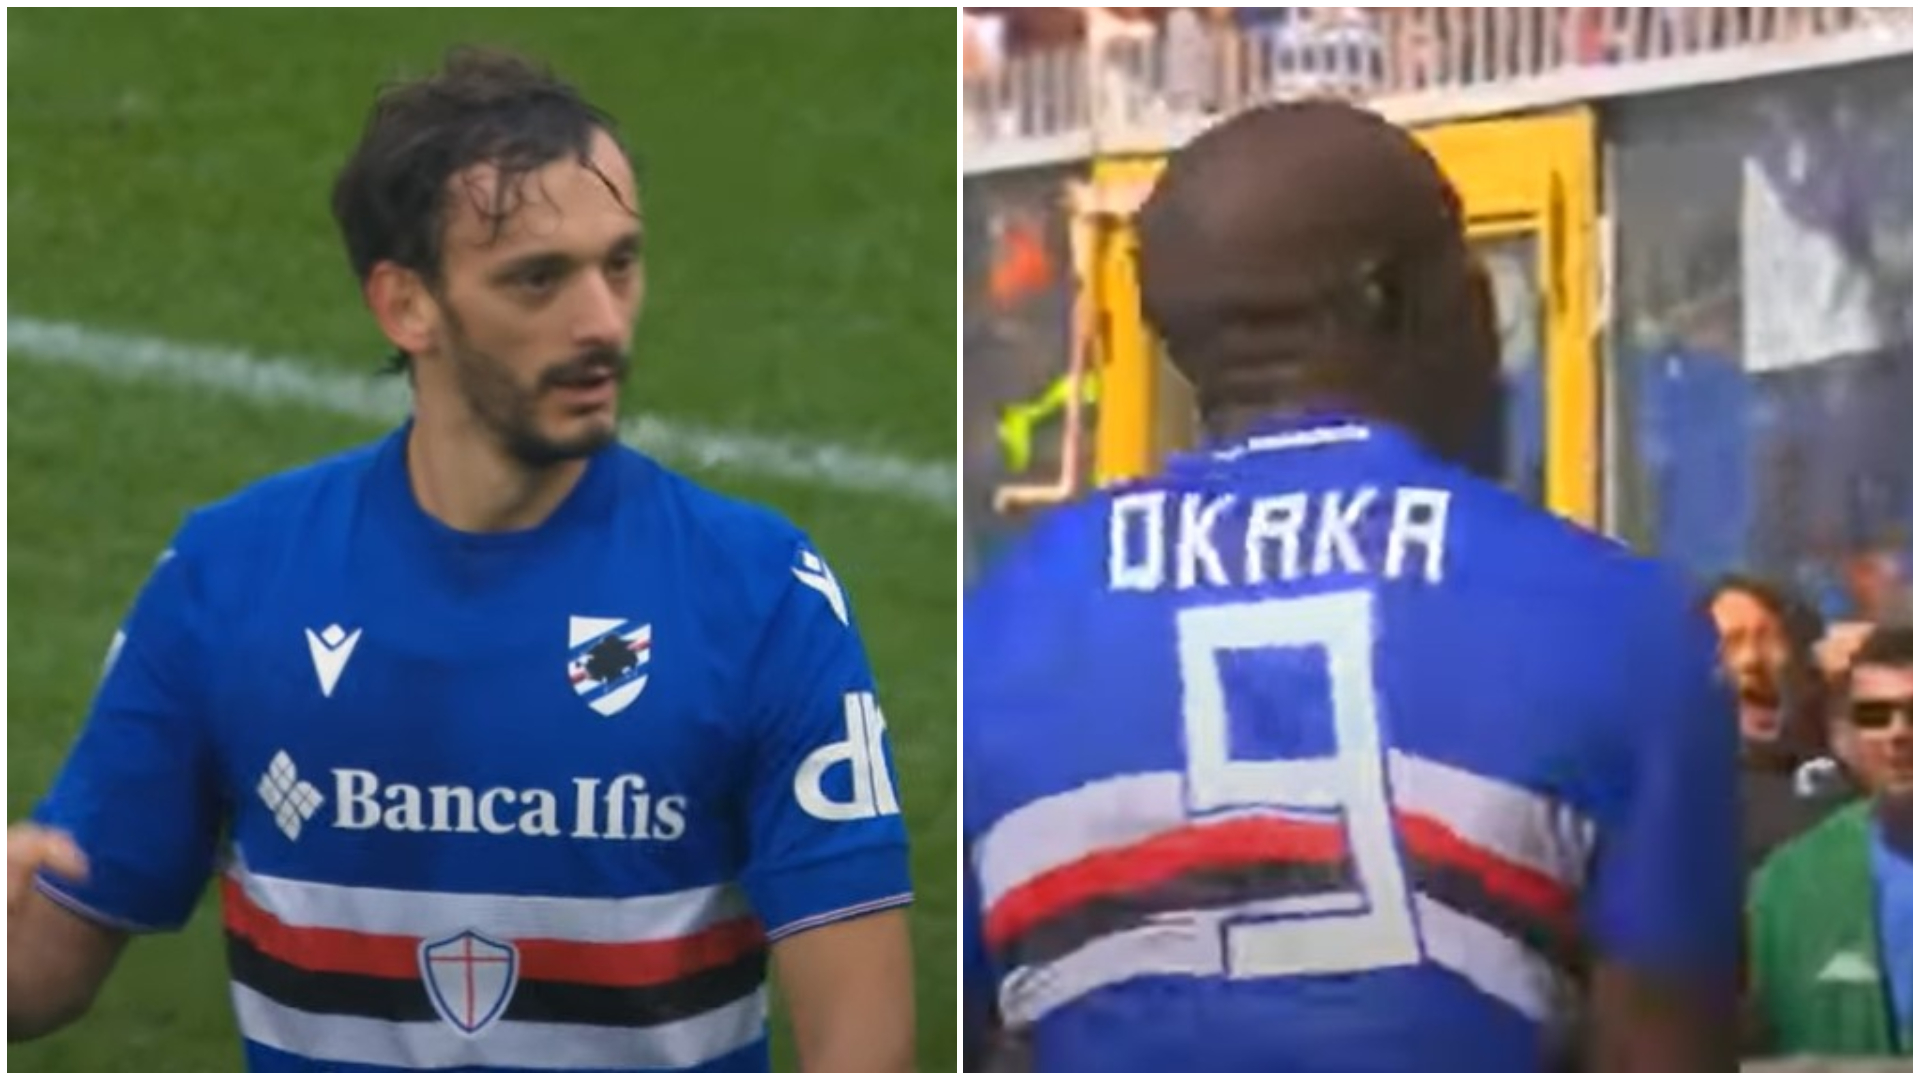 Premier League, due gol italiani nella stessa partita: l'ultima volta capitò nel 2017 con due "sampdoriani"